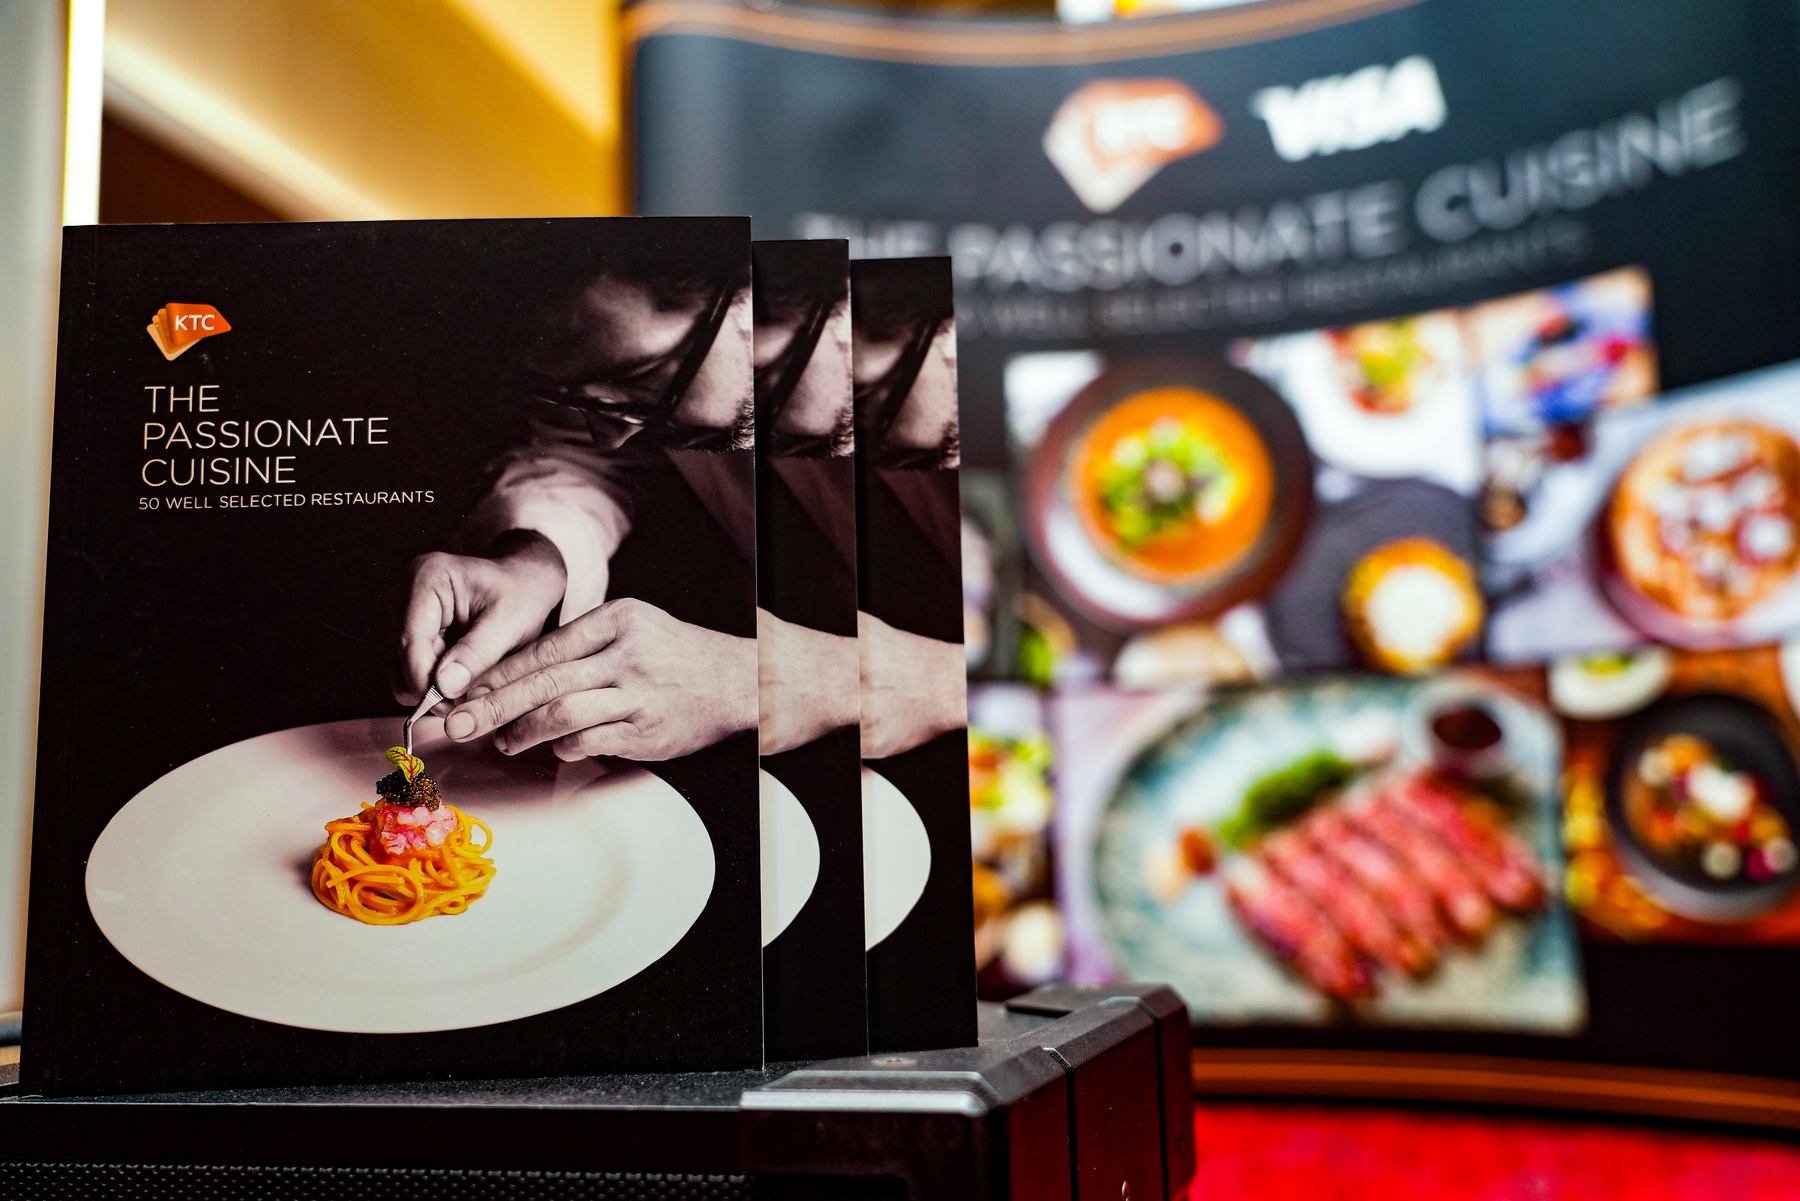 เคทีซีเปิดตัวหนังสือ “KTC The Passionate Cuisine” คัดสรร 50 ร้านอาหารชั้นเลิศไว้ในเล่มเดียว